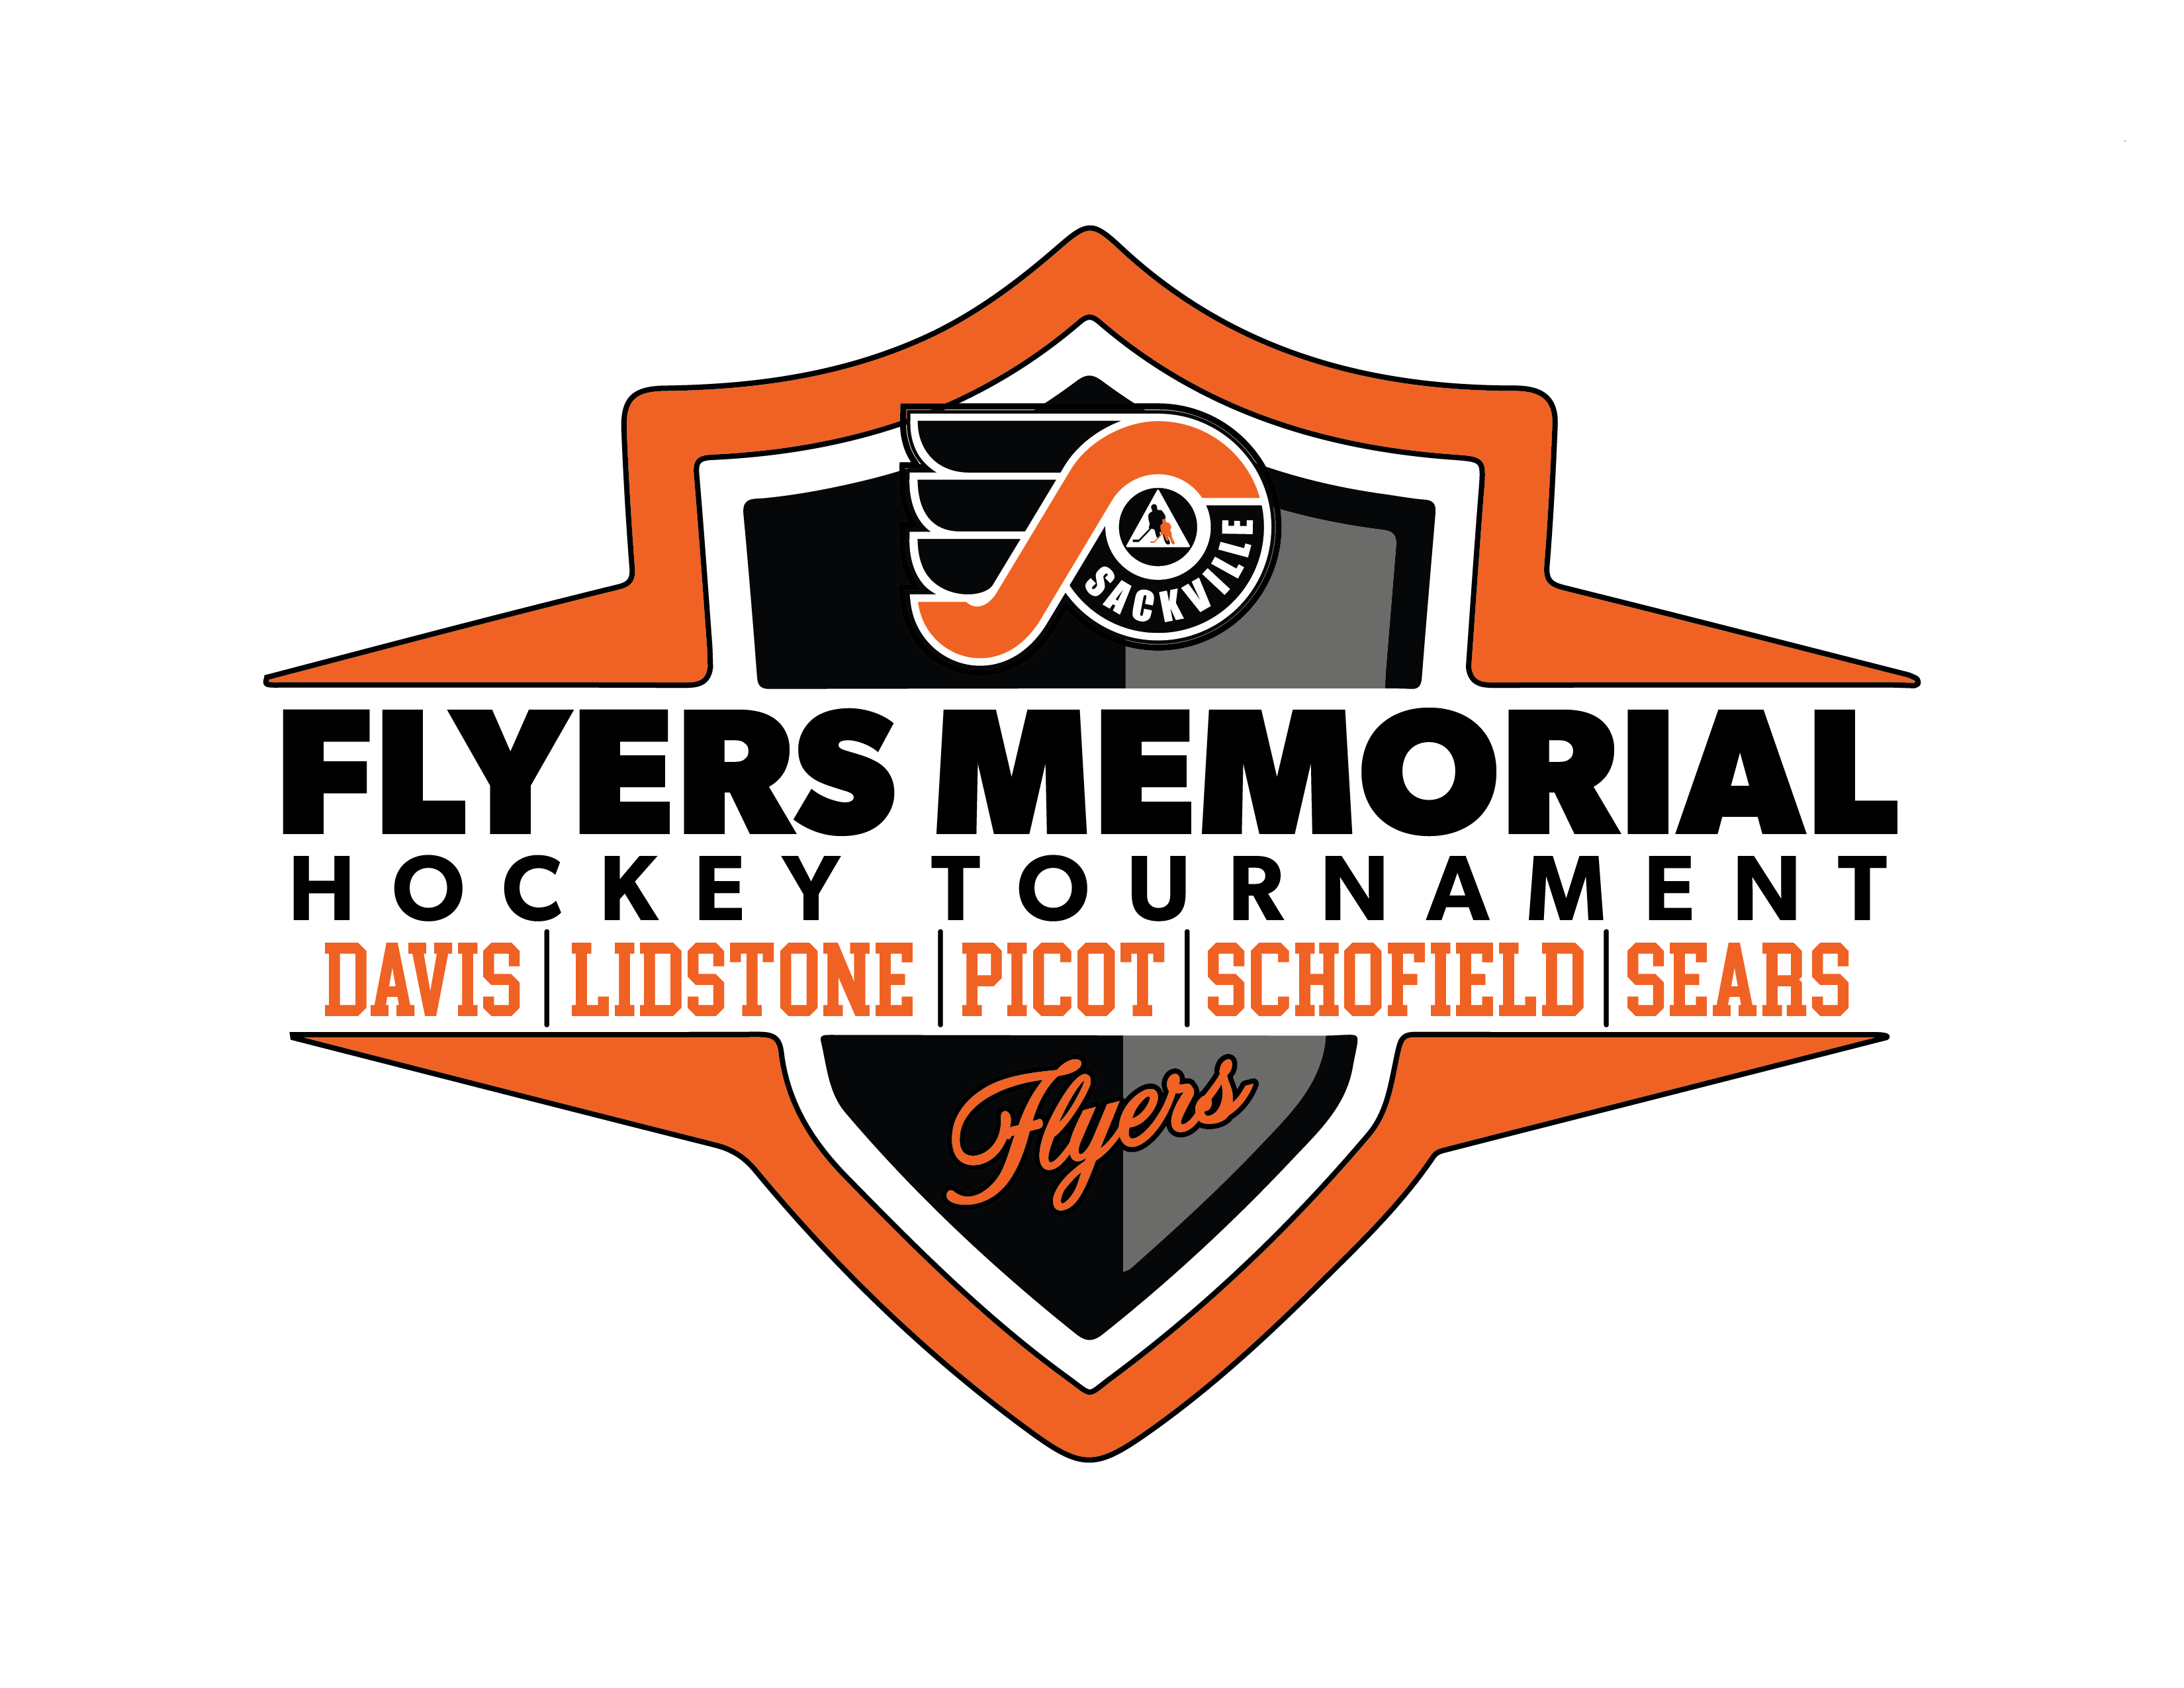 Flyers Memorial